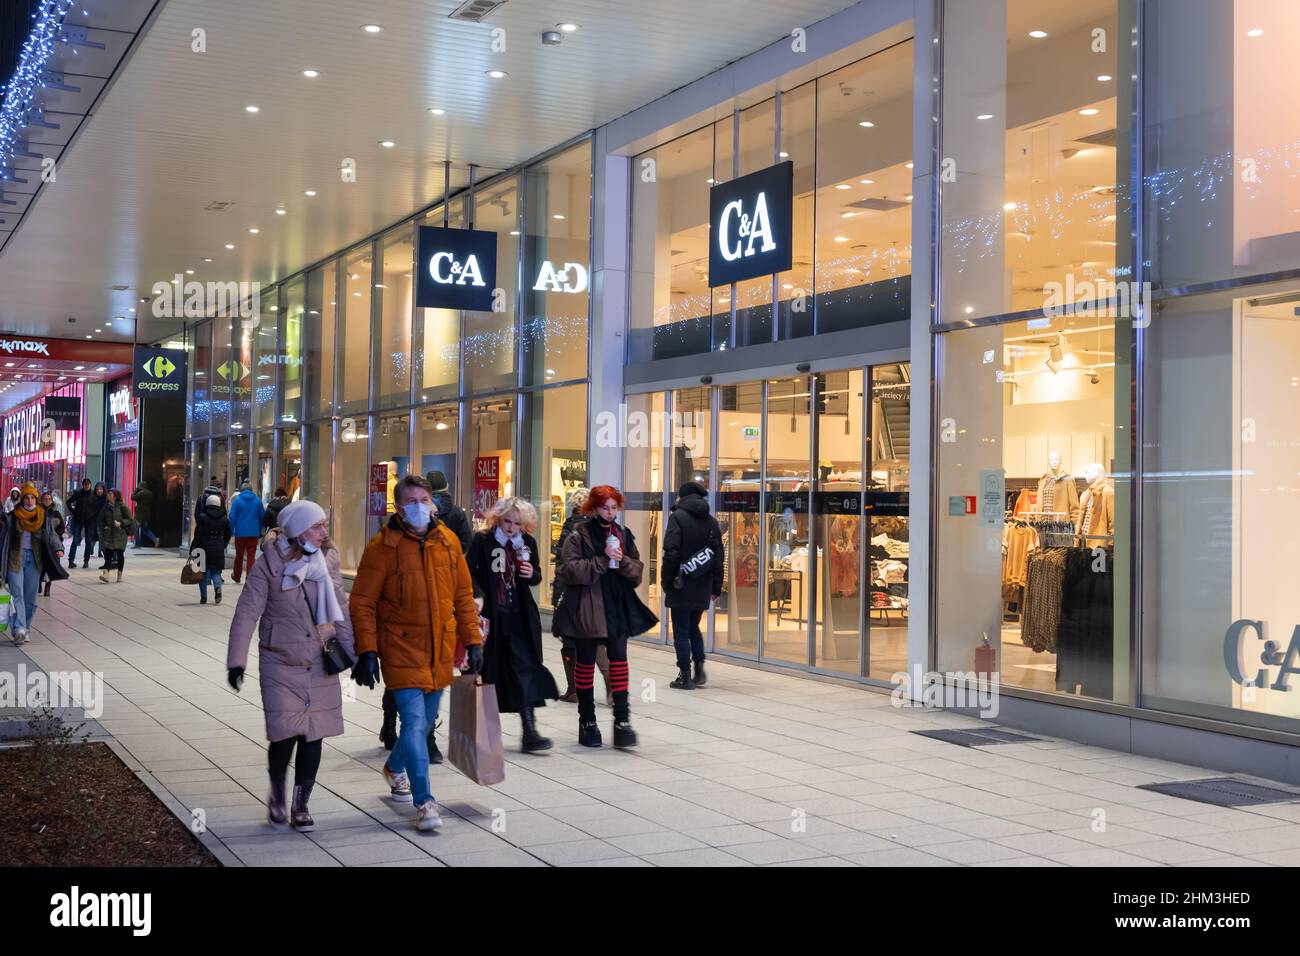 Varsavia, Polonia - 8 gennaio 2022: Ingresso al negozio C&A di via Marszalkowska nel centro della città di notte. Foto Stock